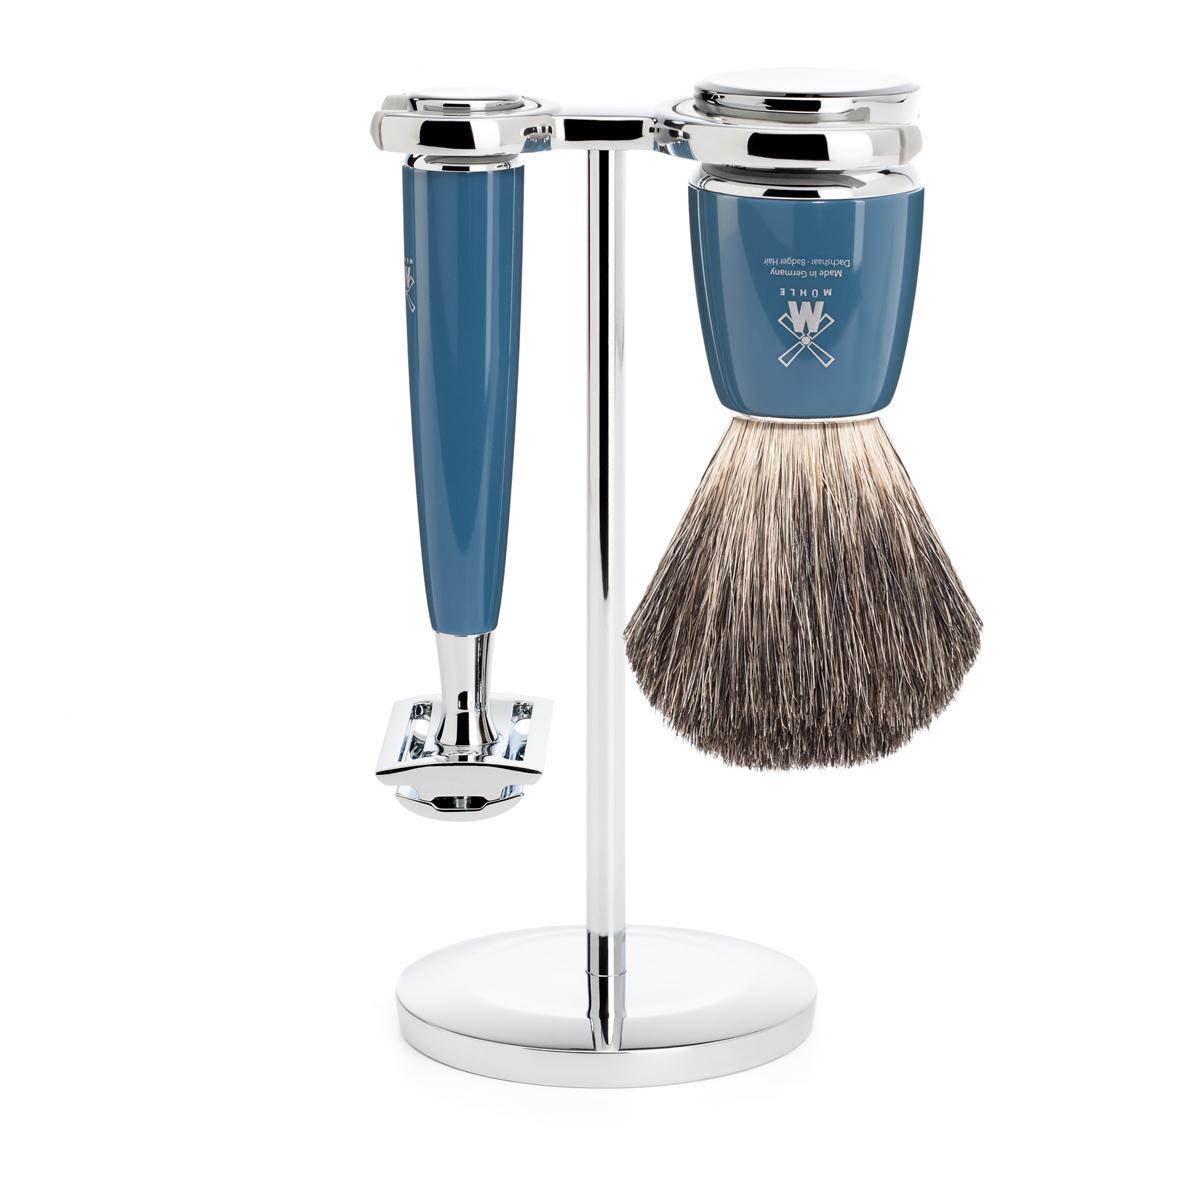 Mühle rytmo azul gasolina 3 unid. conjunto de barbear de texugo puro / aparelho de barbear